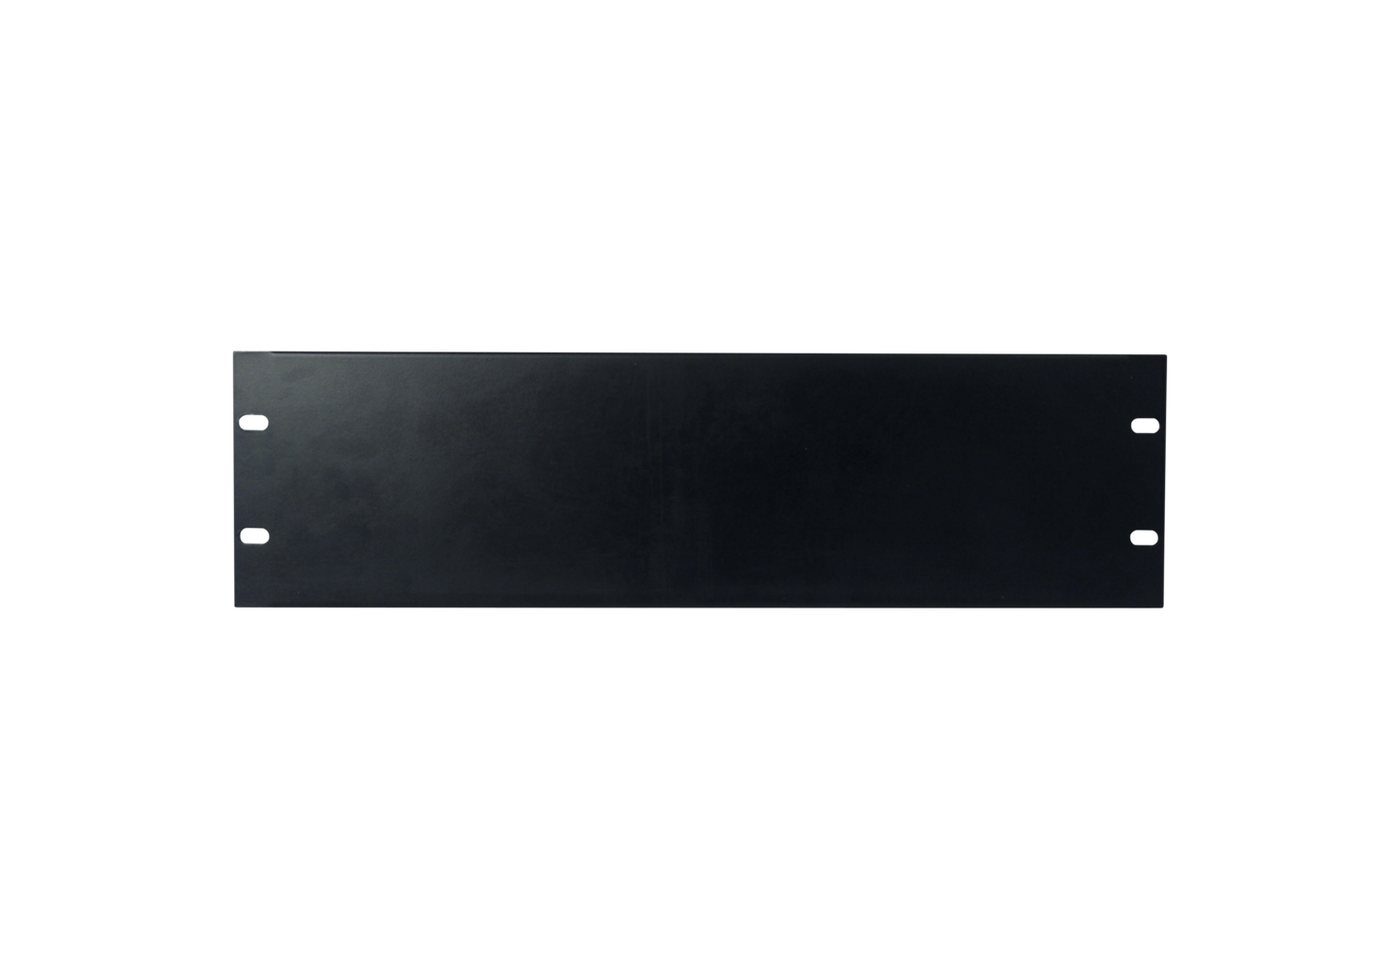 Showgear Rack Showgear 19 inch Blind Panel Black 3HE von Showgear